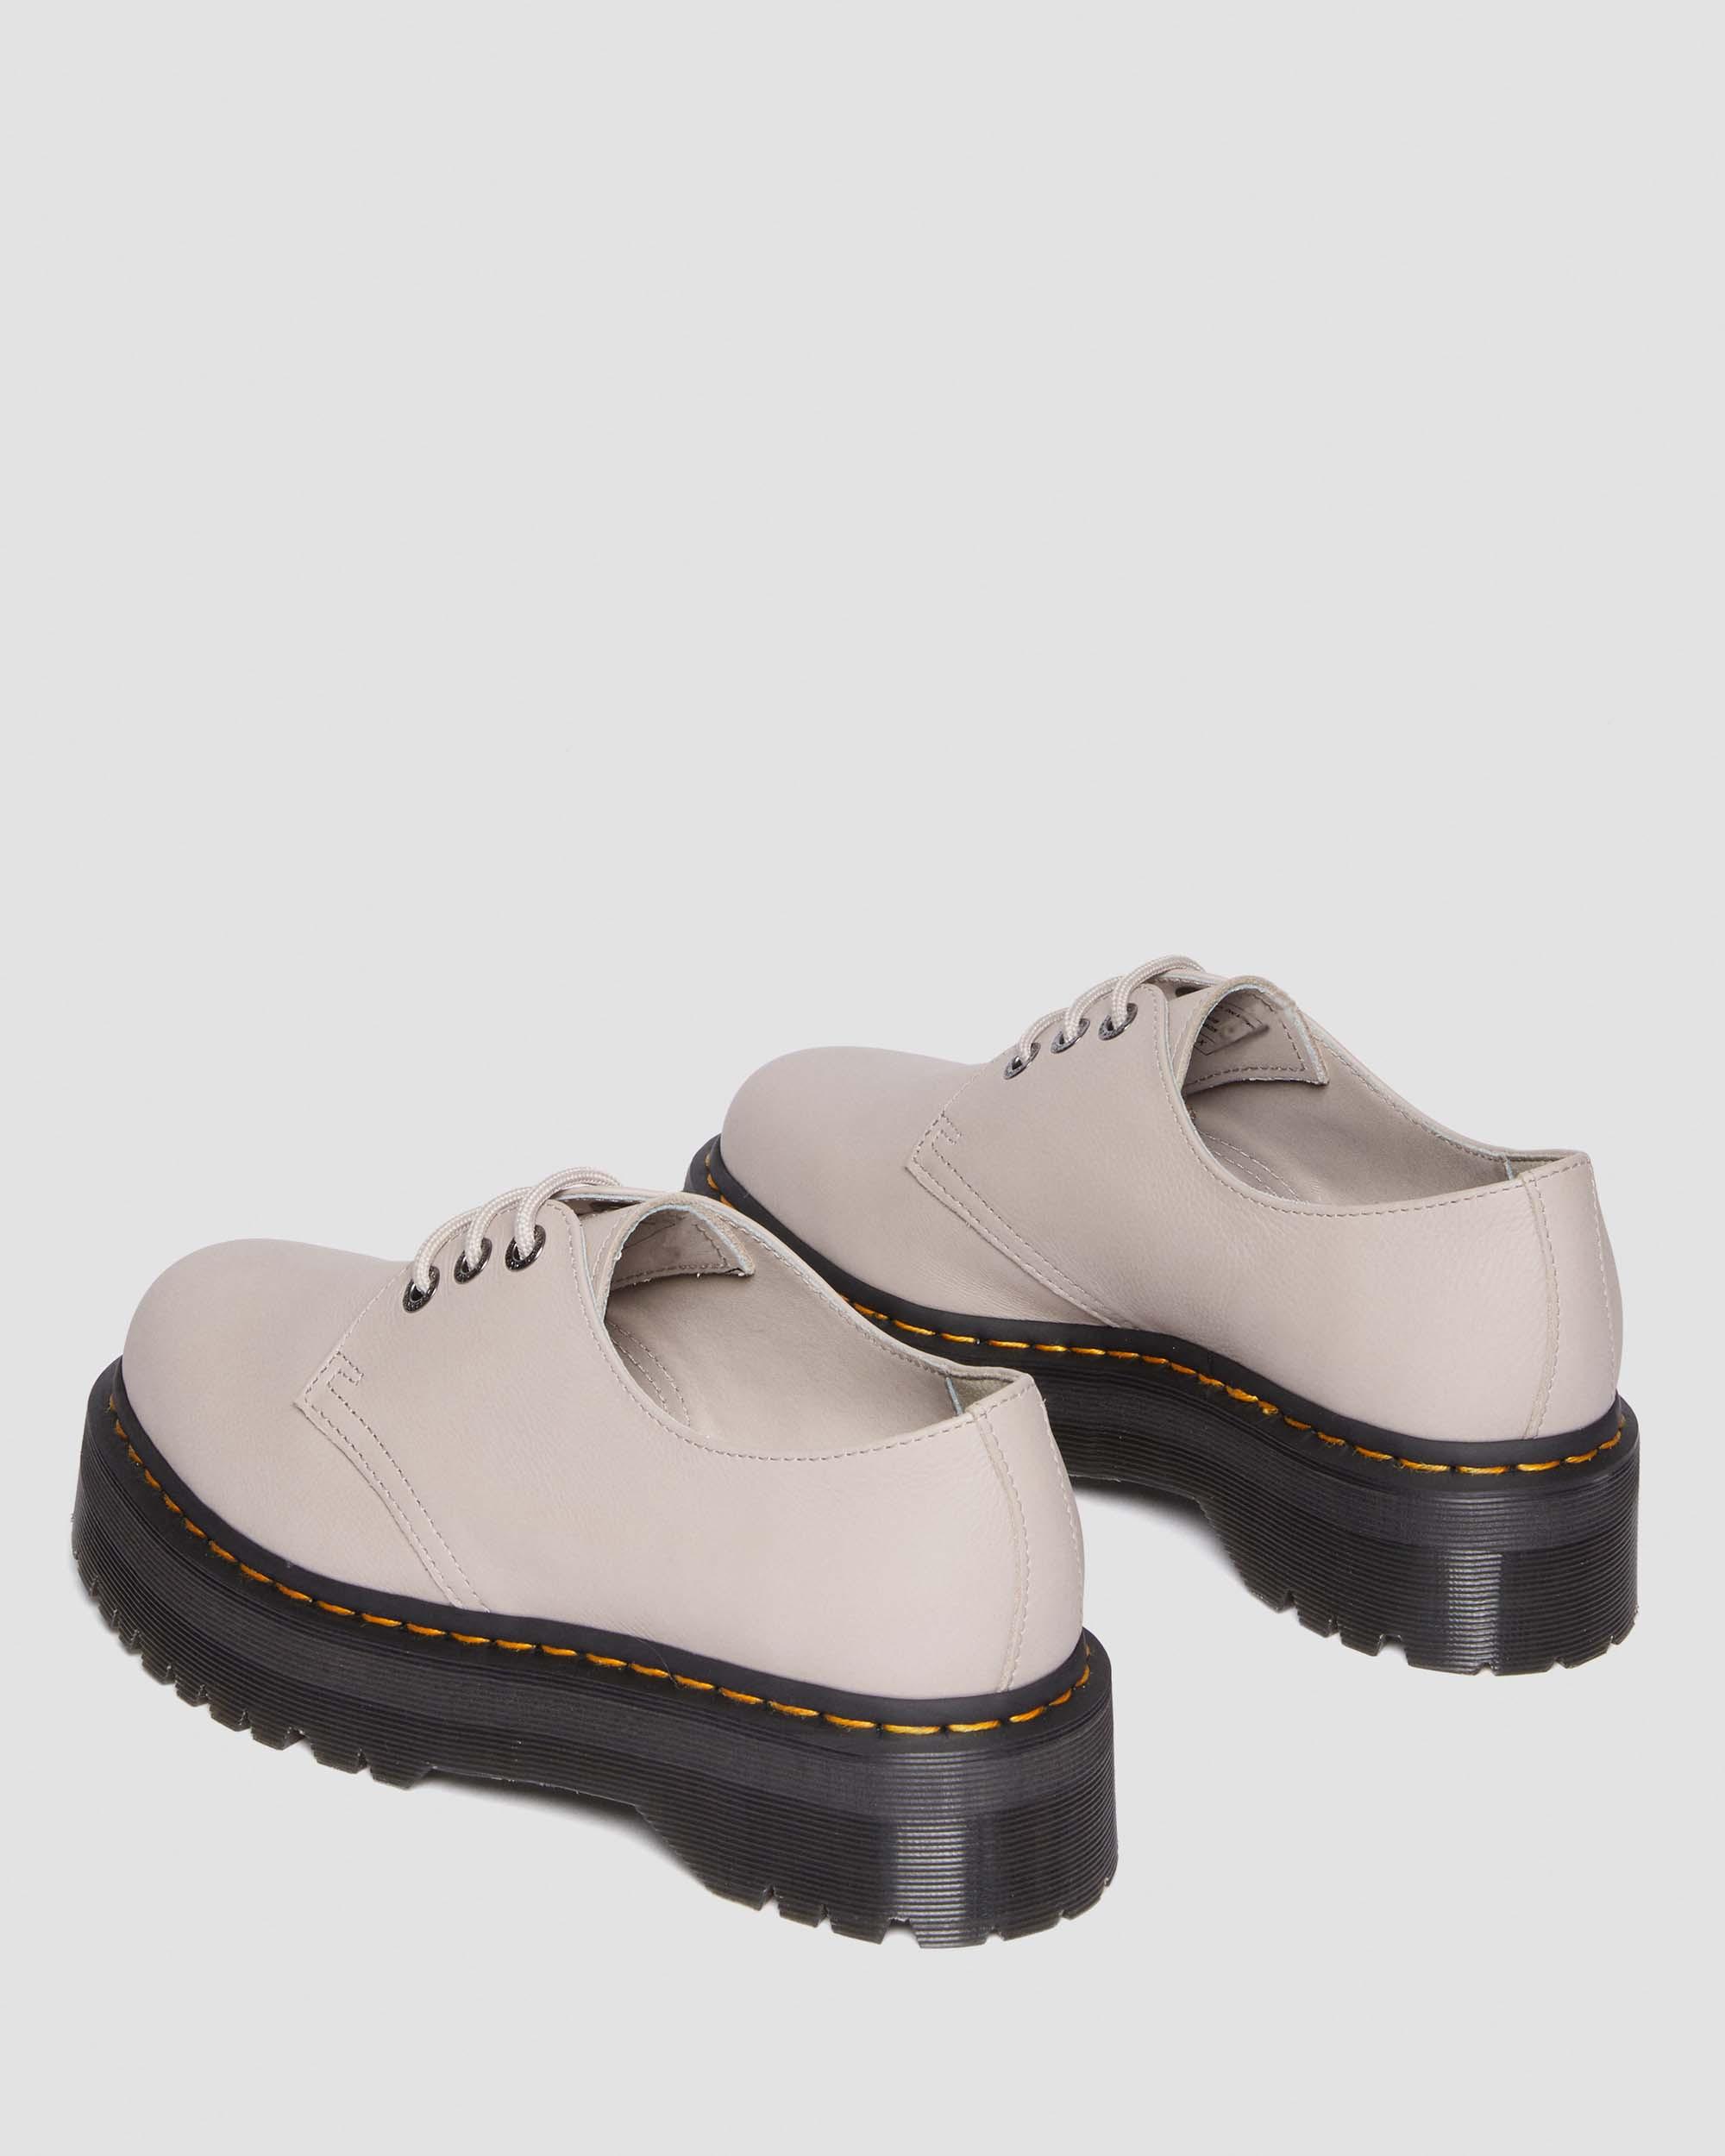 1461 II Pisa Leather Platform Shoes in Vintage Taupe | Dr. Martens